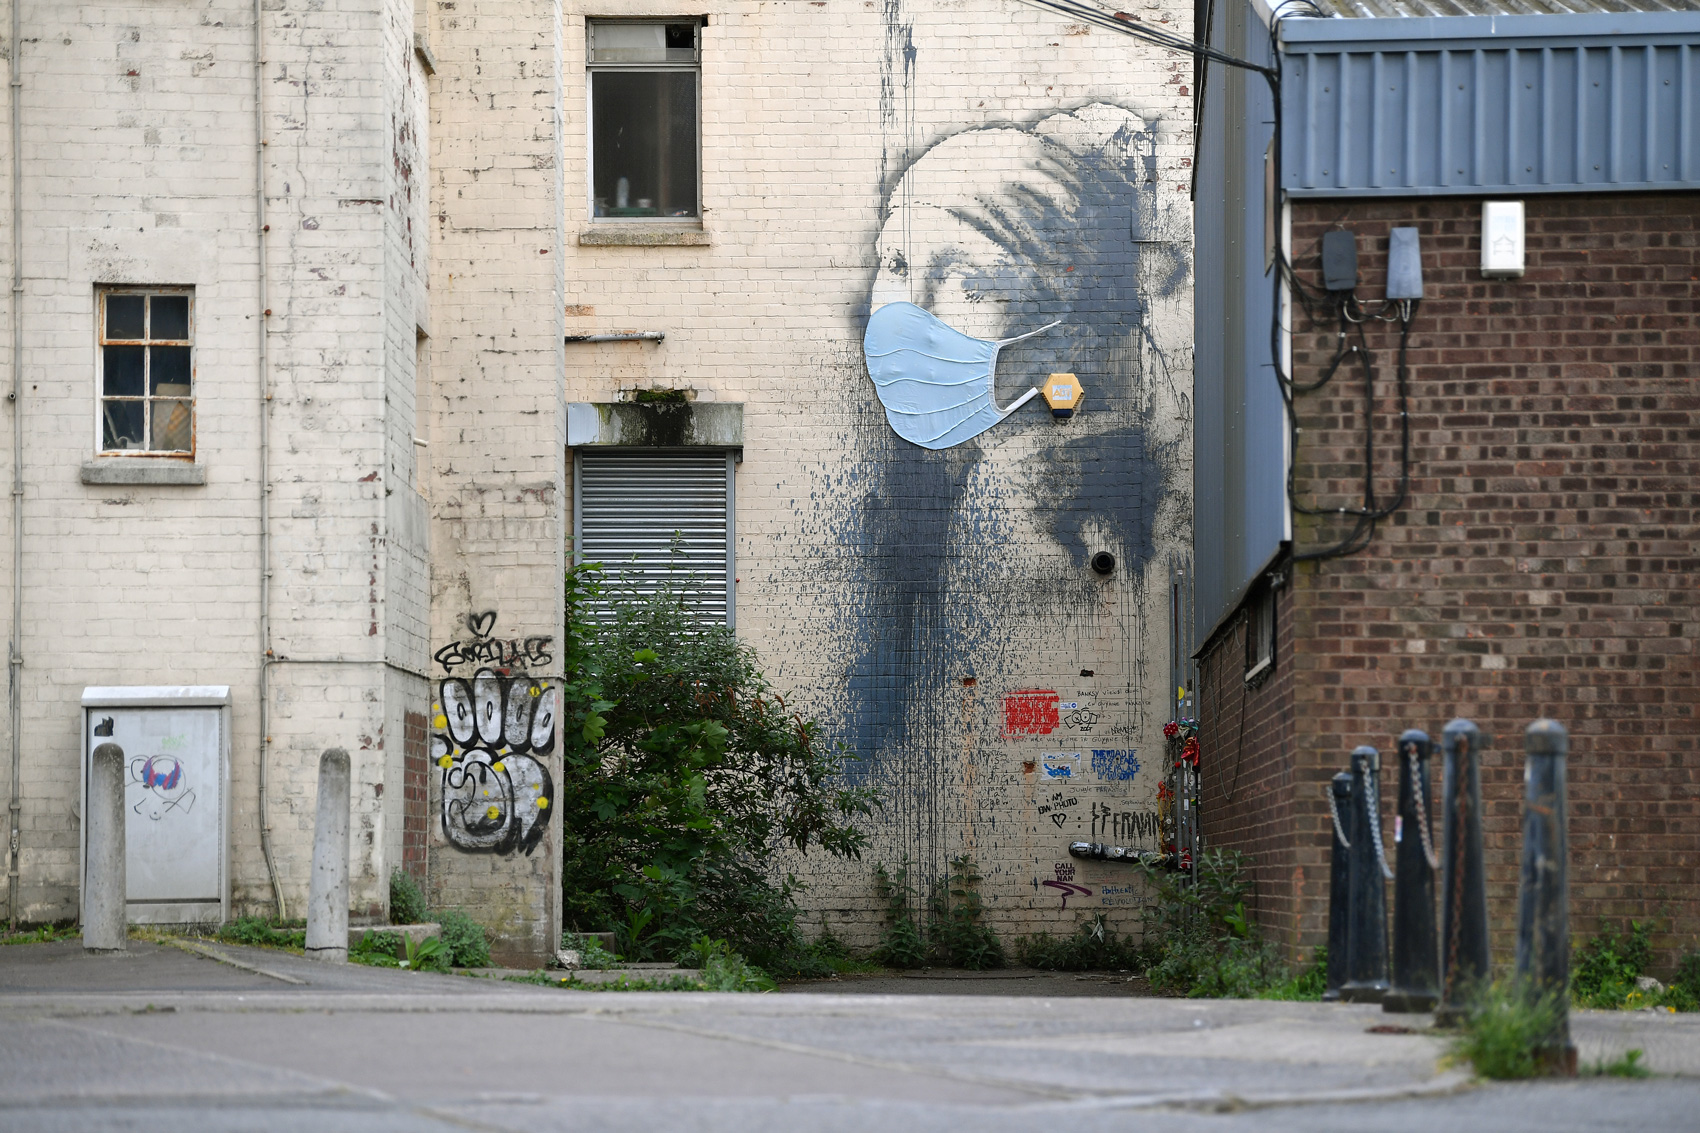 Le opere iconiche di Banksy, lo street artist più famoso al mondo - Foto